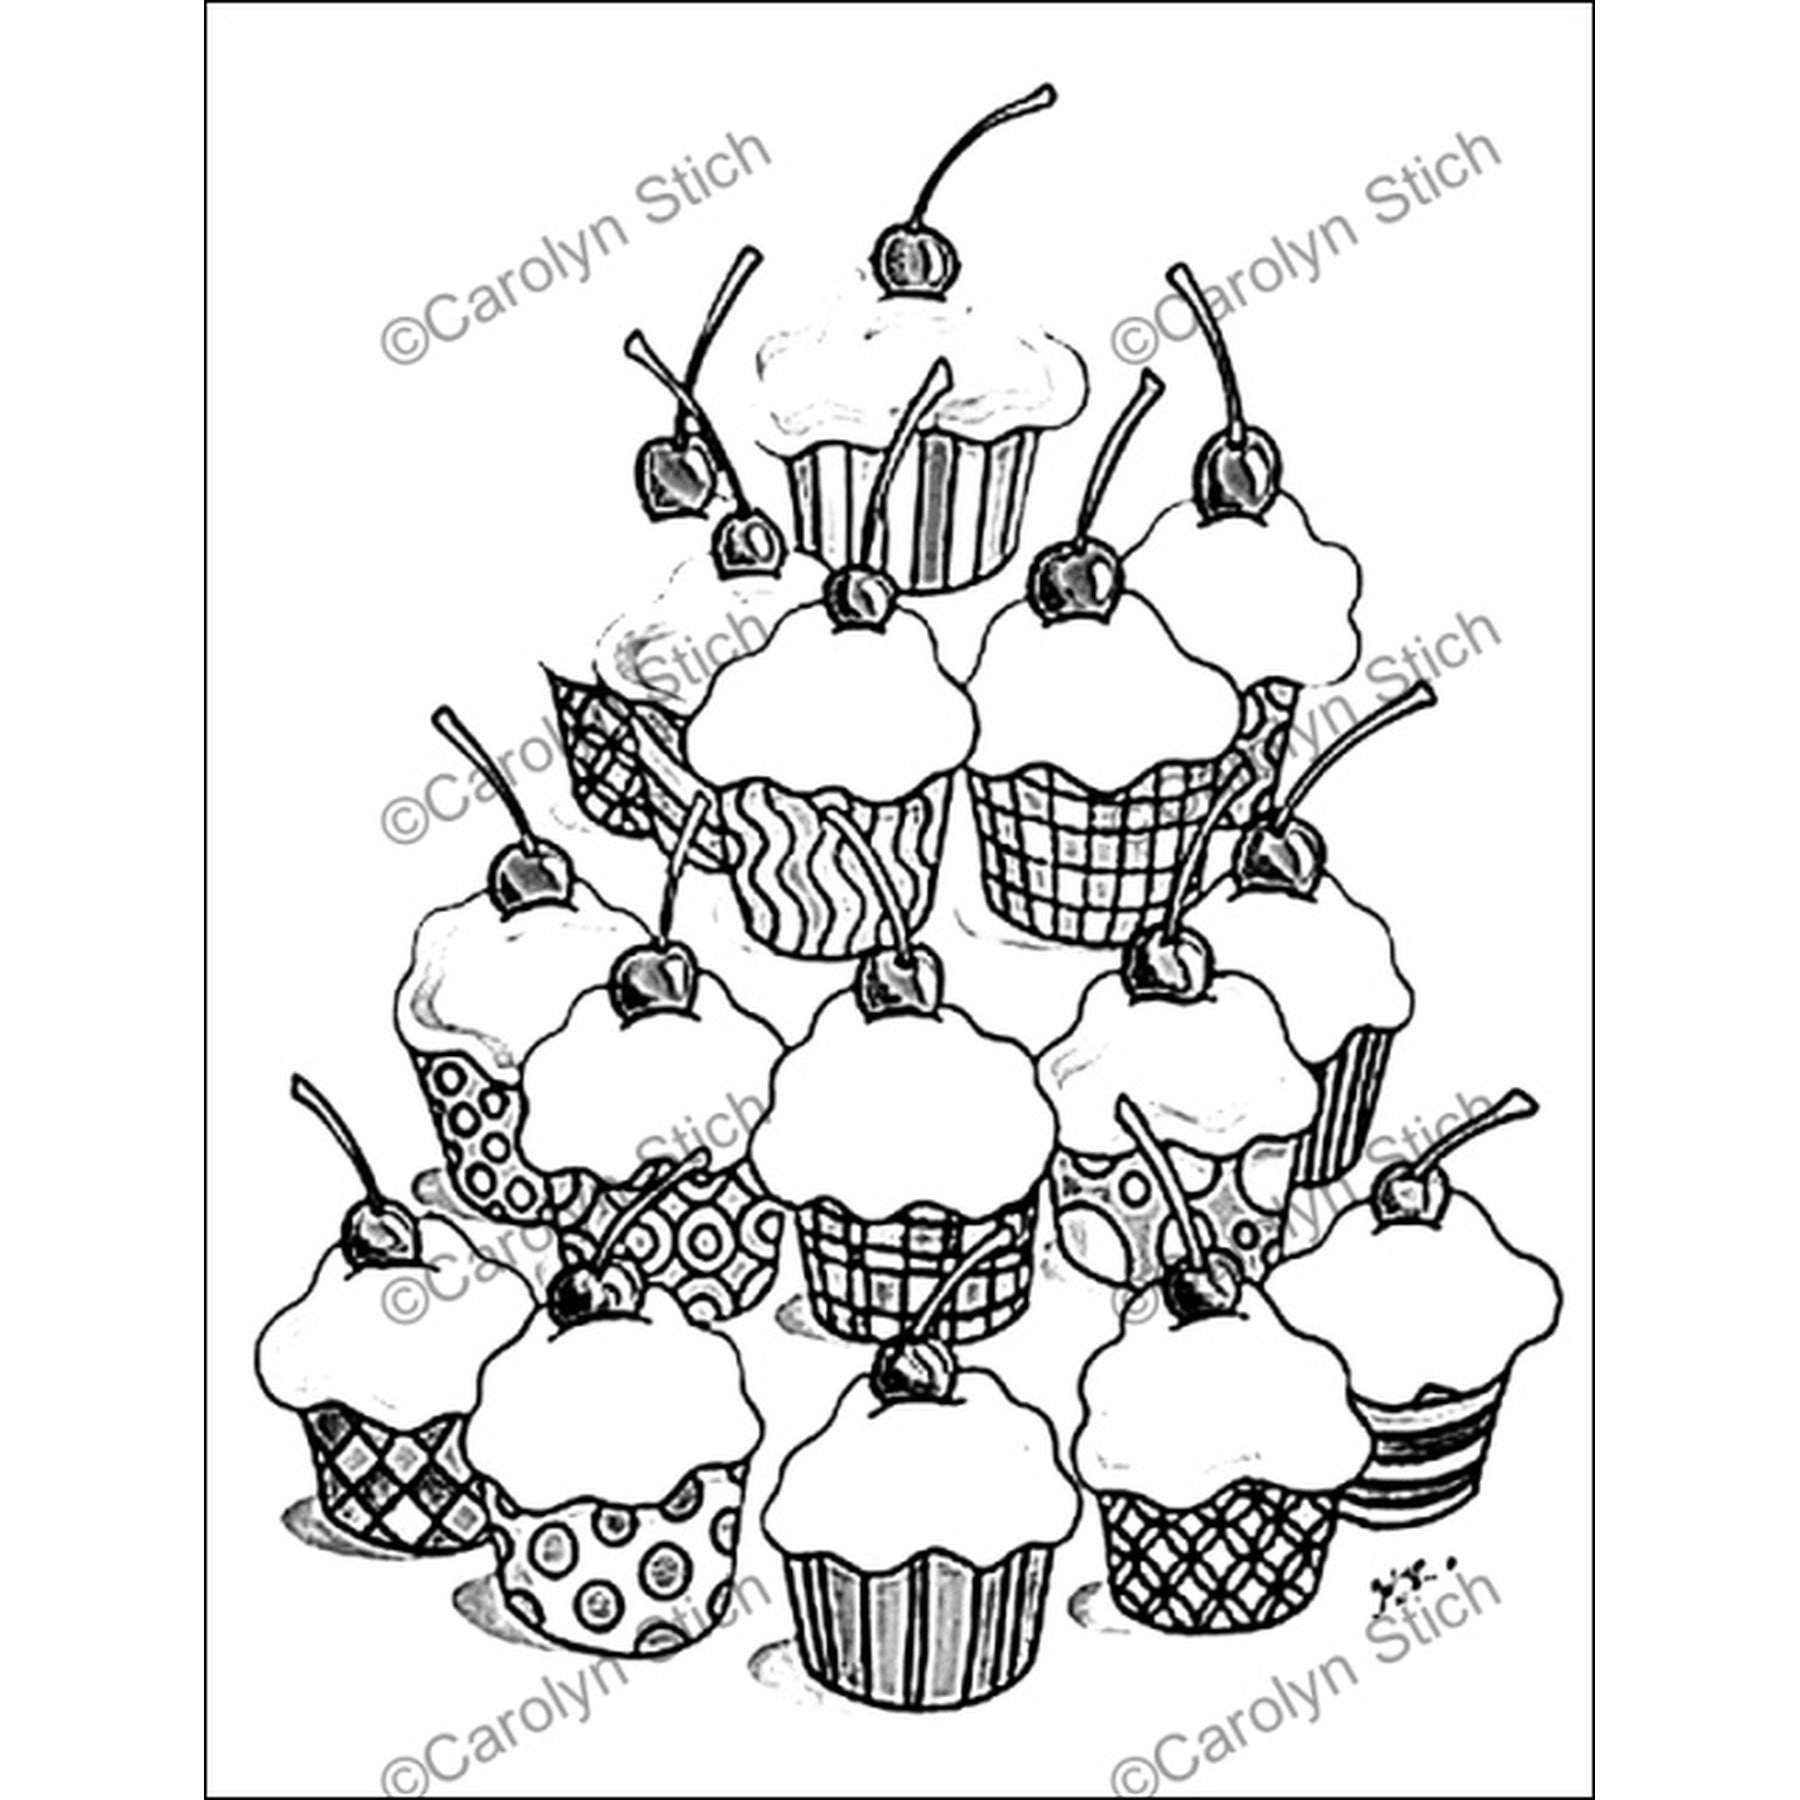 Cupcakes, rug hooking pattern